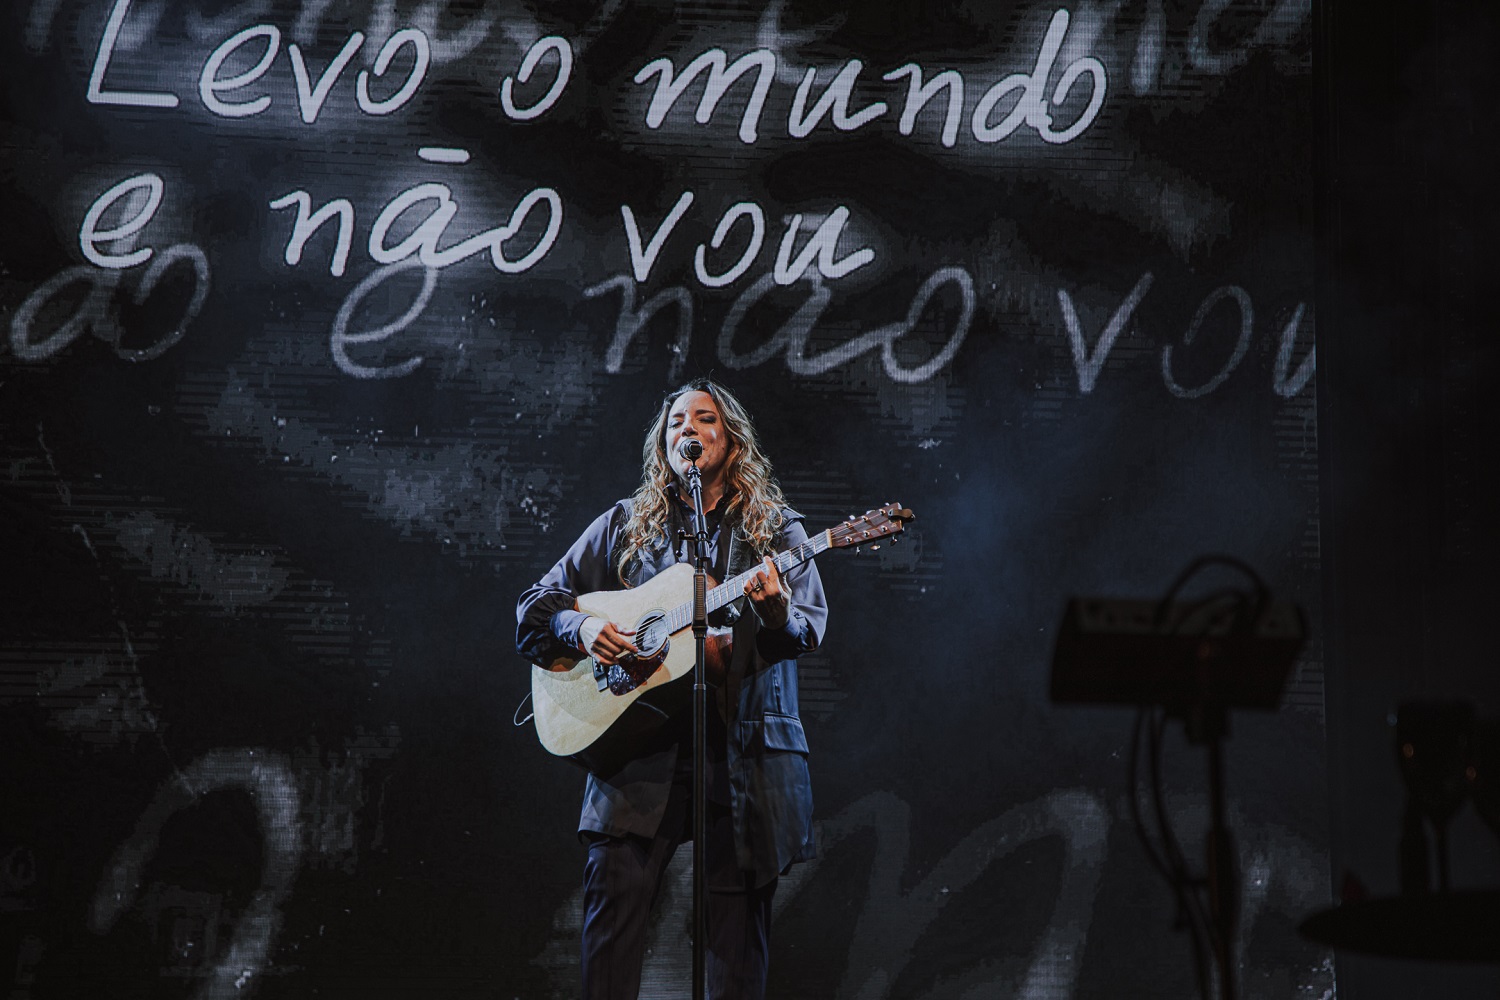 Turnê 'Ana canta Cássia' chega ao ES neste sábado (29) com sucessos de uma das maiores vozes do MPB; ainda há ingressos disponíveis